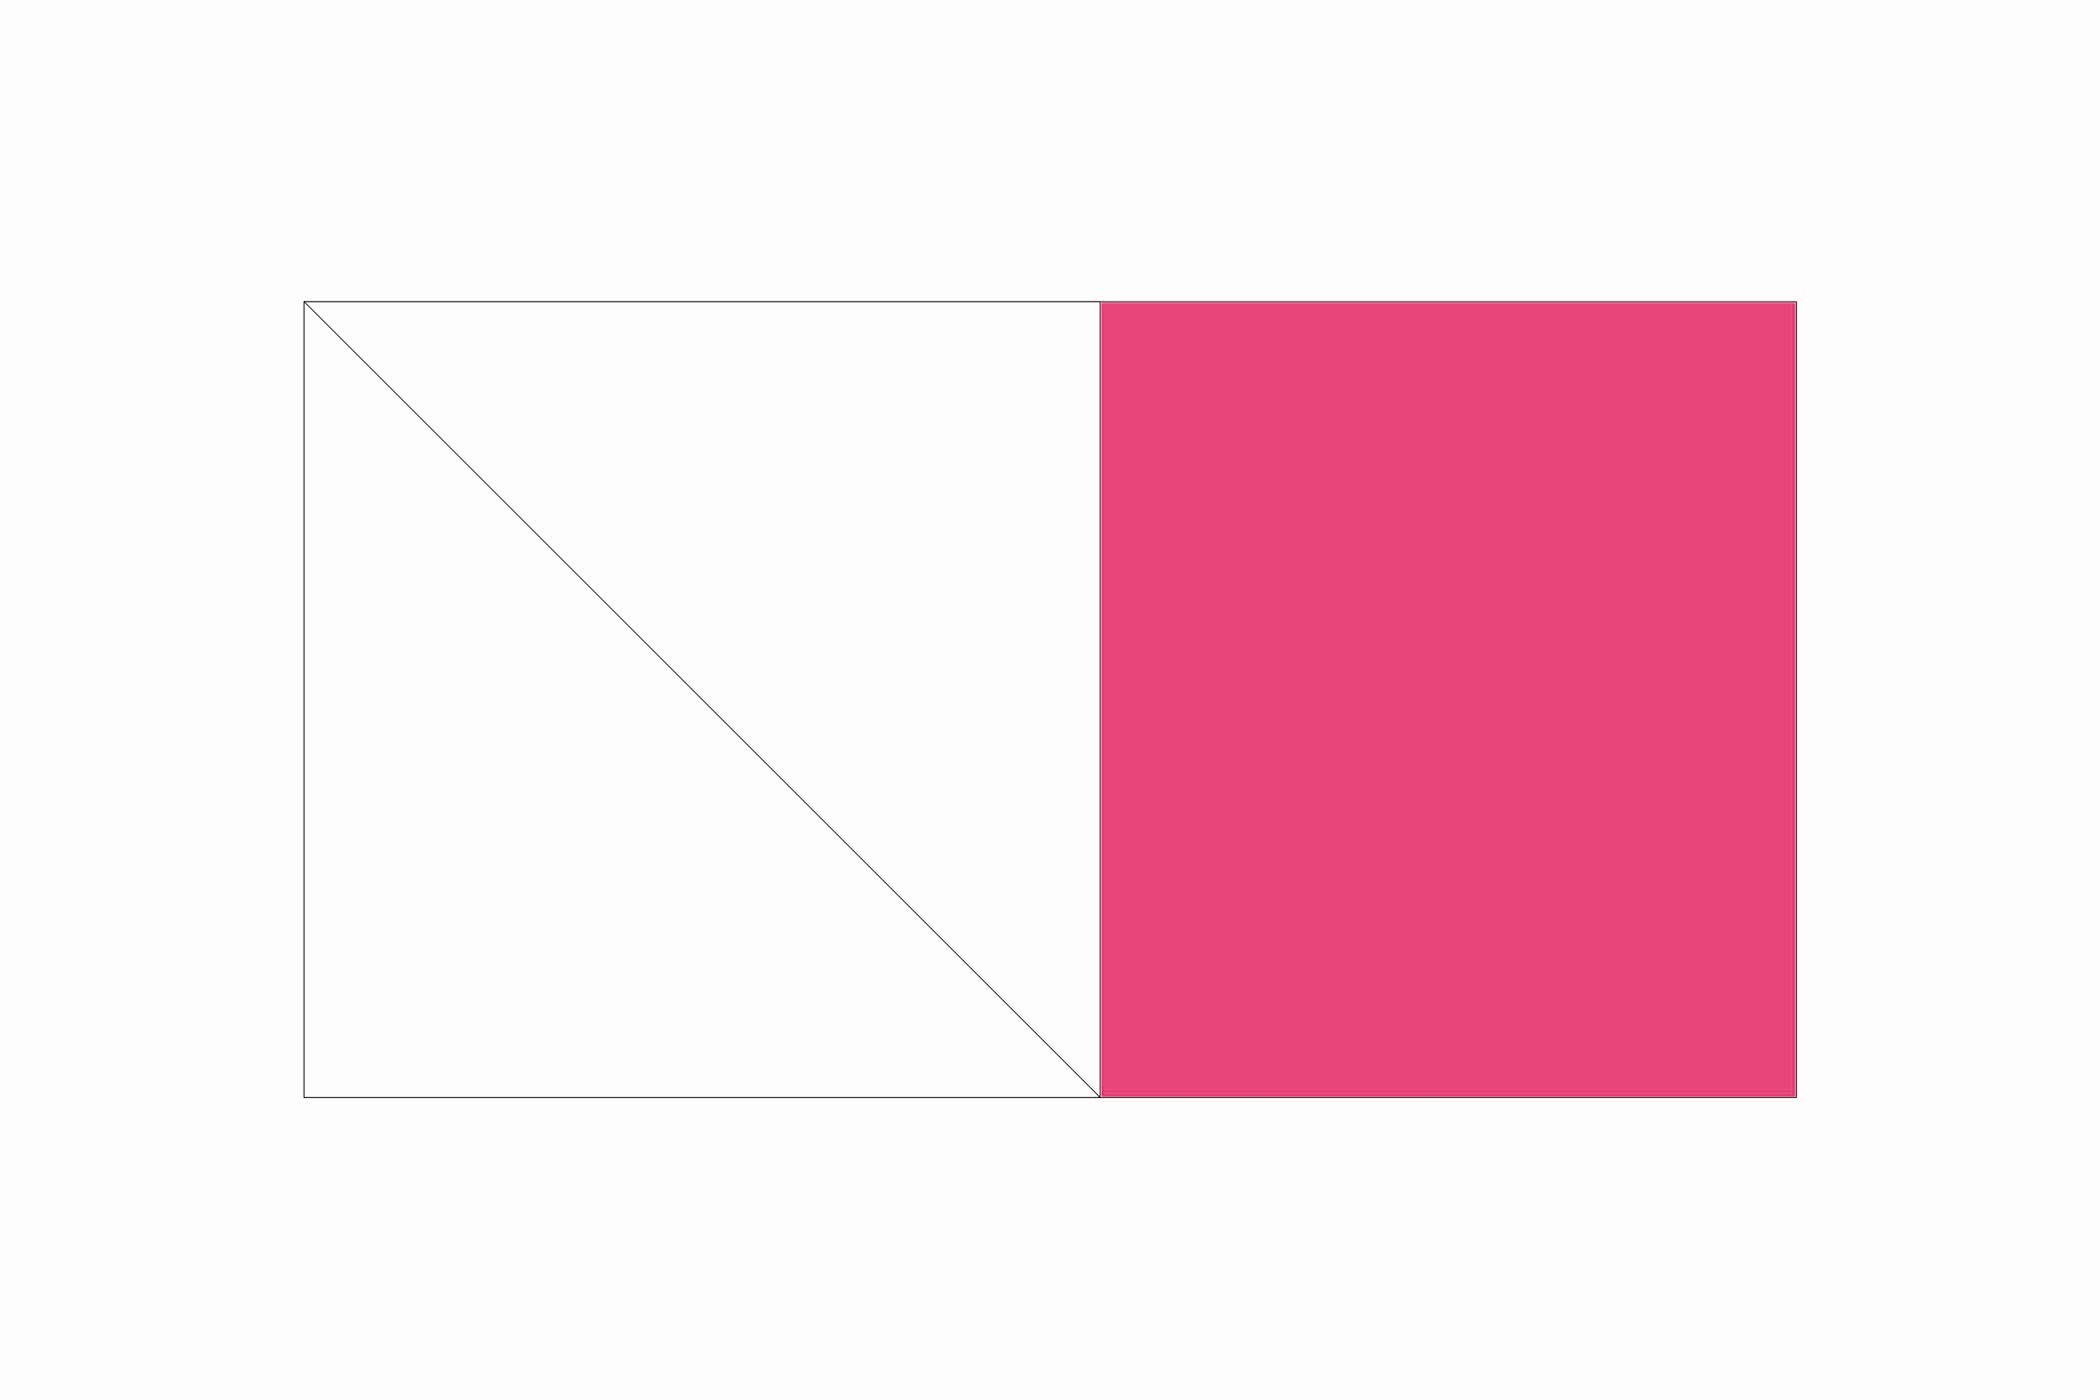 Schéma montrant des carrés roses et des rectangles blancs pour réaliser un bloc d'oies volantes